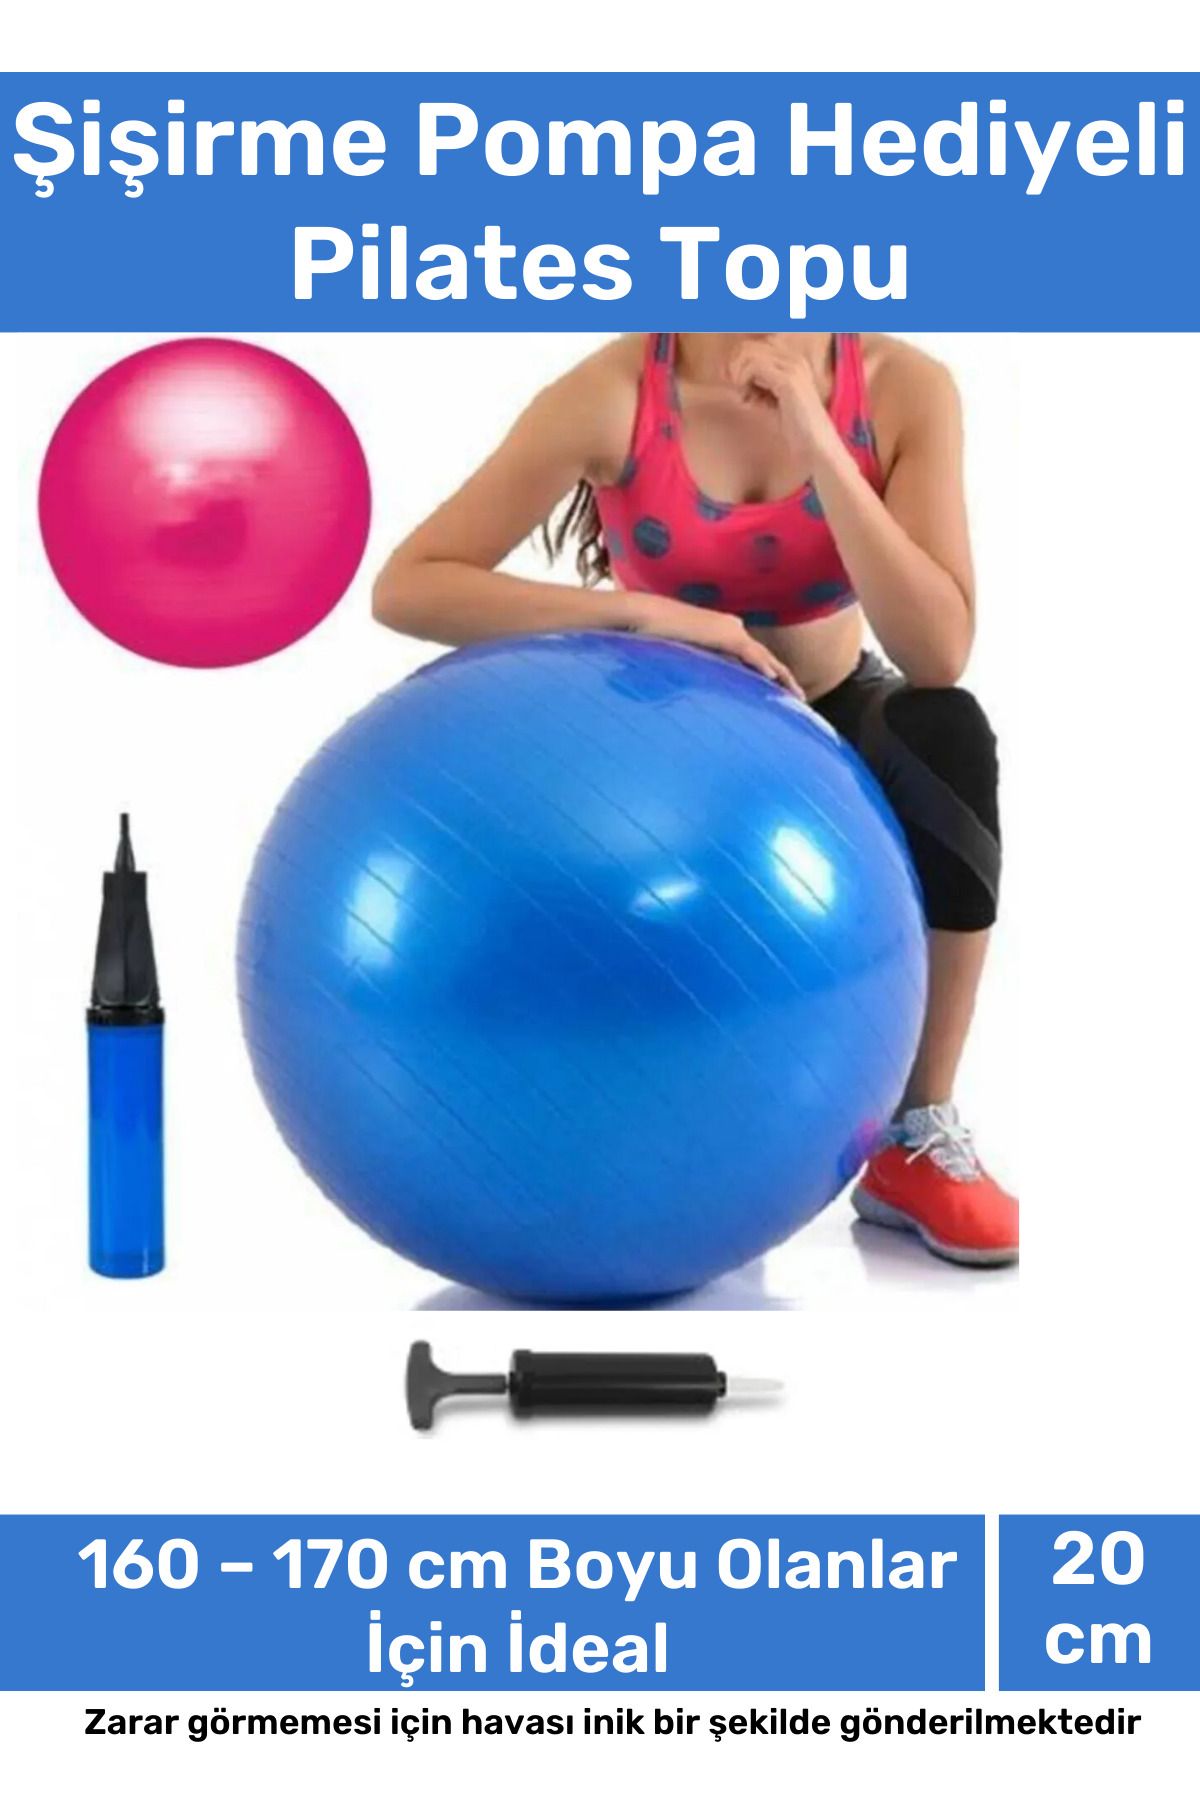 Carlburn Profesyonel Seri Dayanıklı Yüksek Kalite Mini Gymball 20cm Mavi Pilates Topu Şişirme Pompa